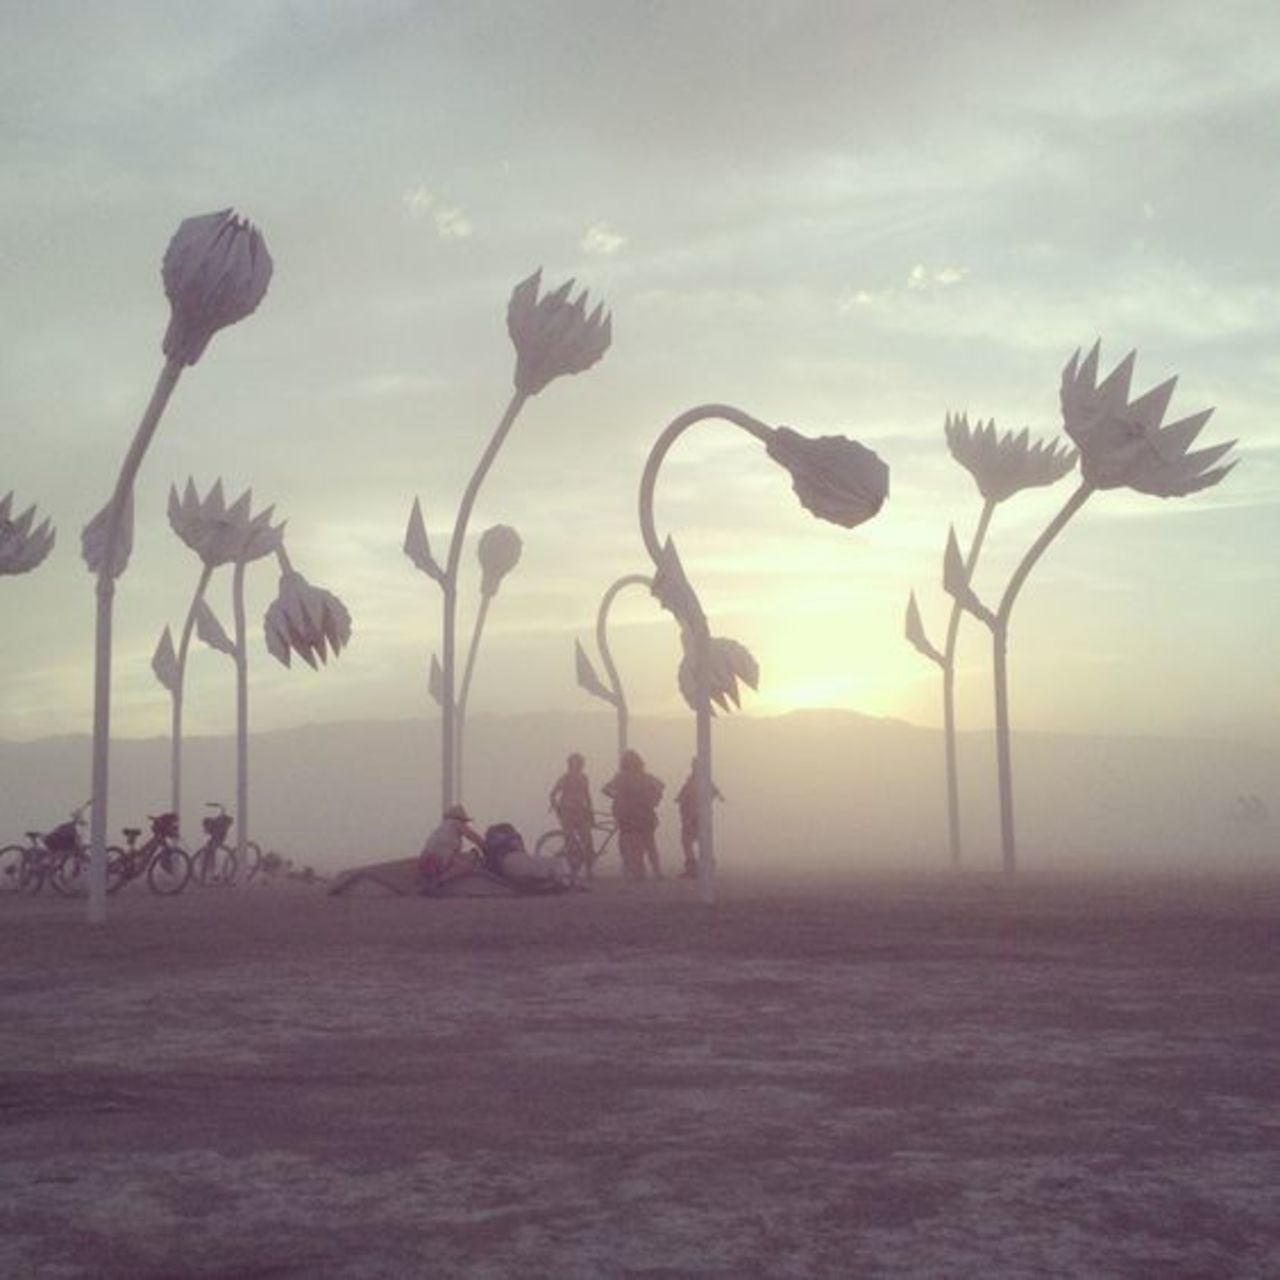 Giant Desert Flower Sculptures at Burning Man       •       #BurningMan #sculpture #streetart #art  . : https://t.co/N6v5dEpv09